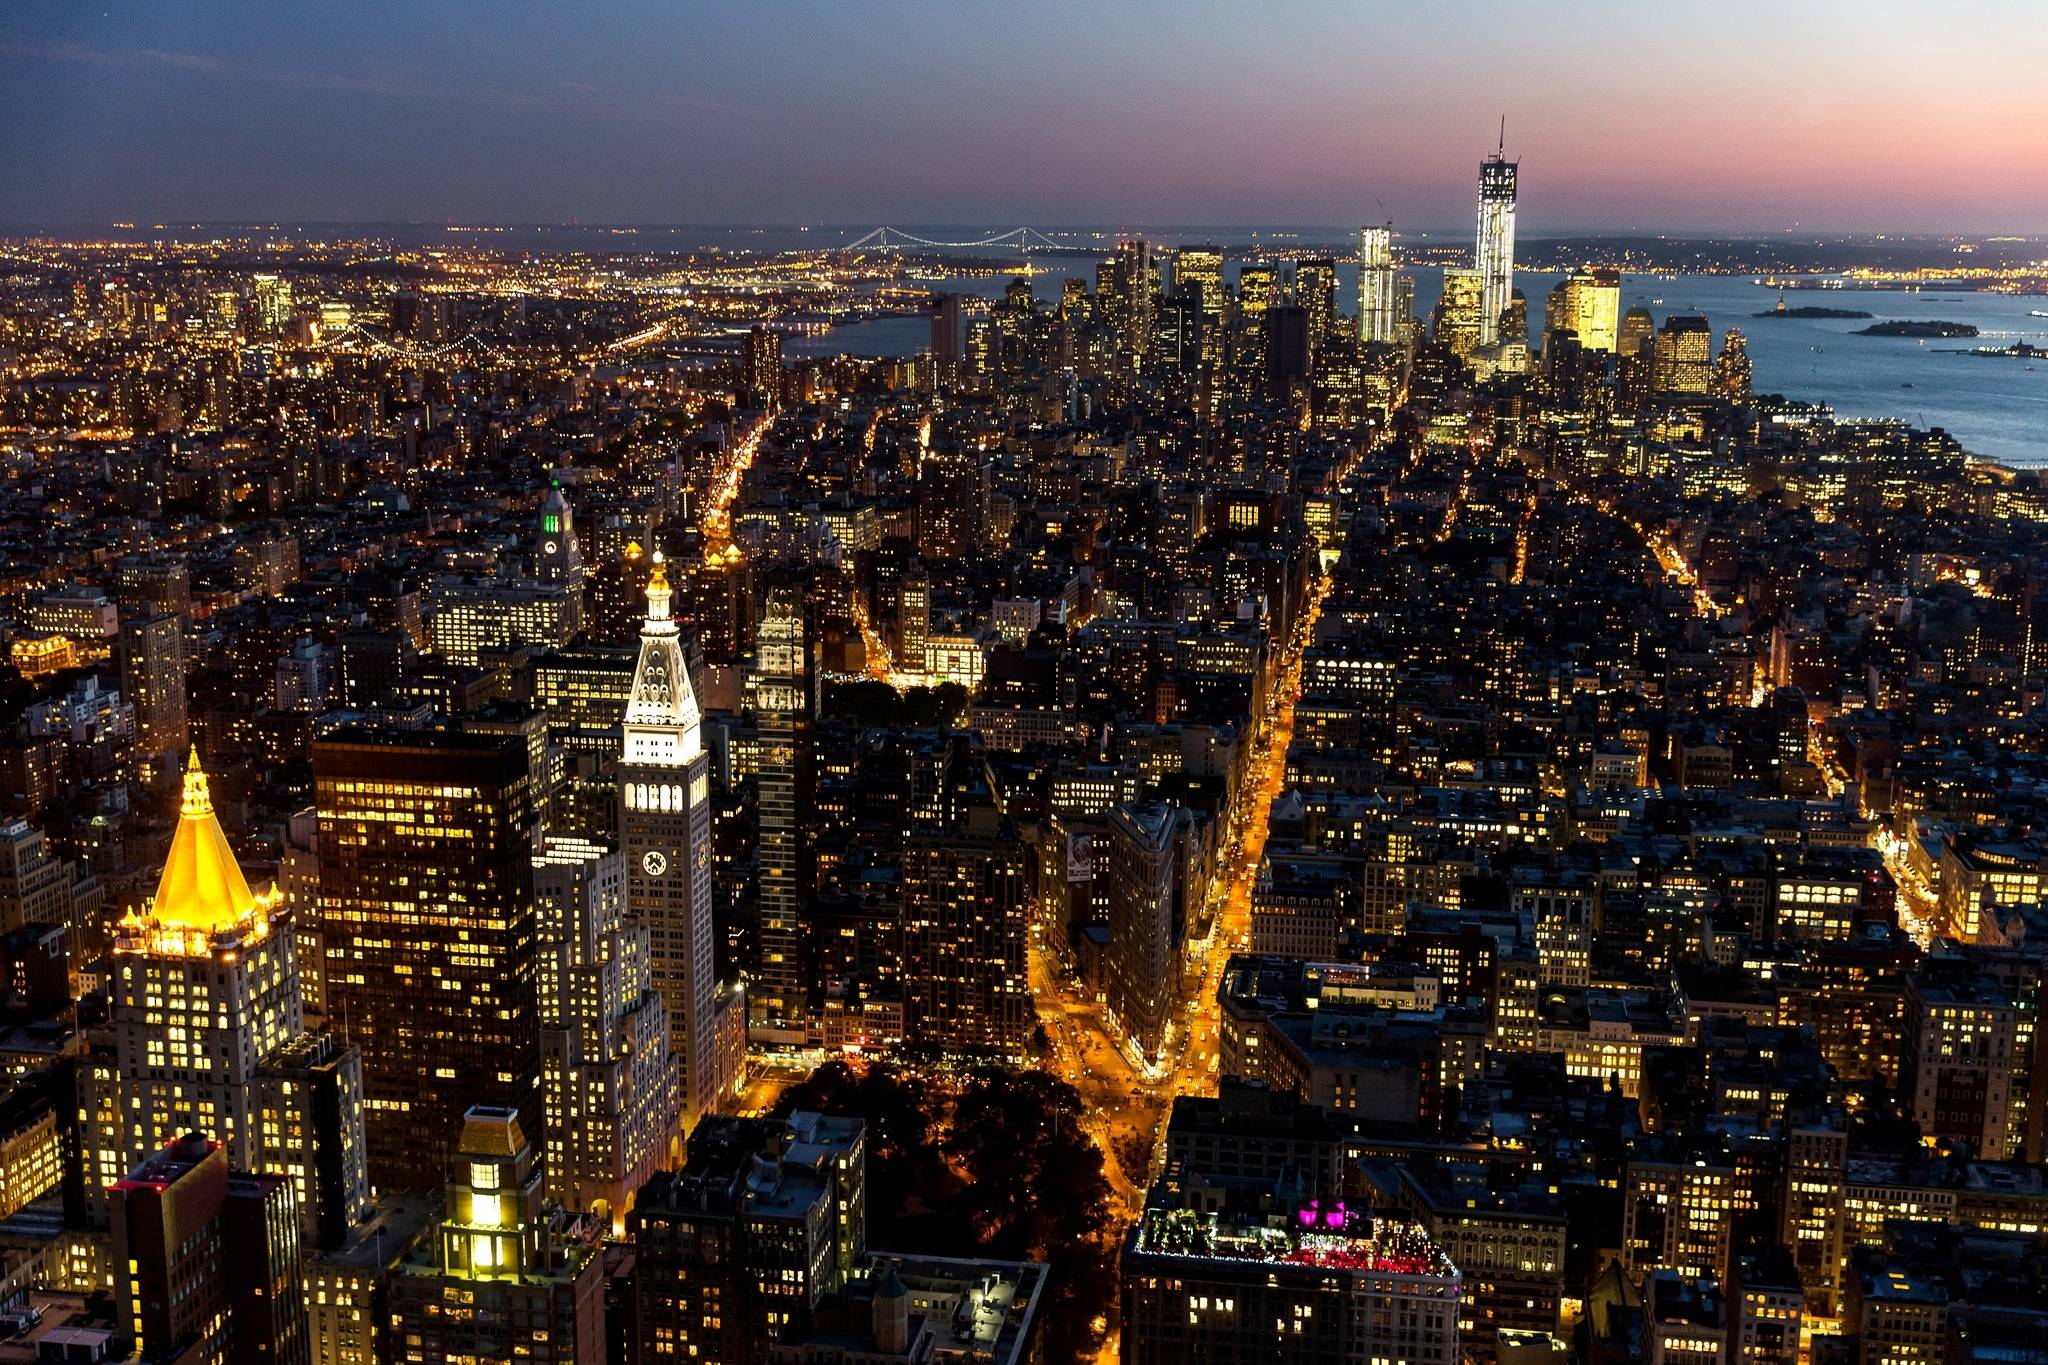 Tải miễn phí Hình nền New York City [2048x1365] để tạo sự thỏa mãn cho người yêu thích chủ đề đô thị này. Hãy ngắm nhìn toàn cảnh của Thành phố New York với các đường phố sầm uất, tạo ra một thế giới sống động trong trái tim của bạn.